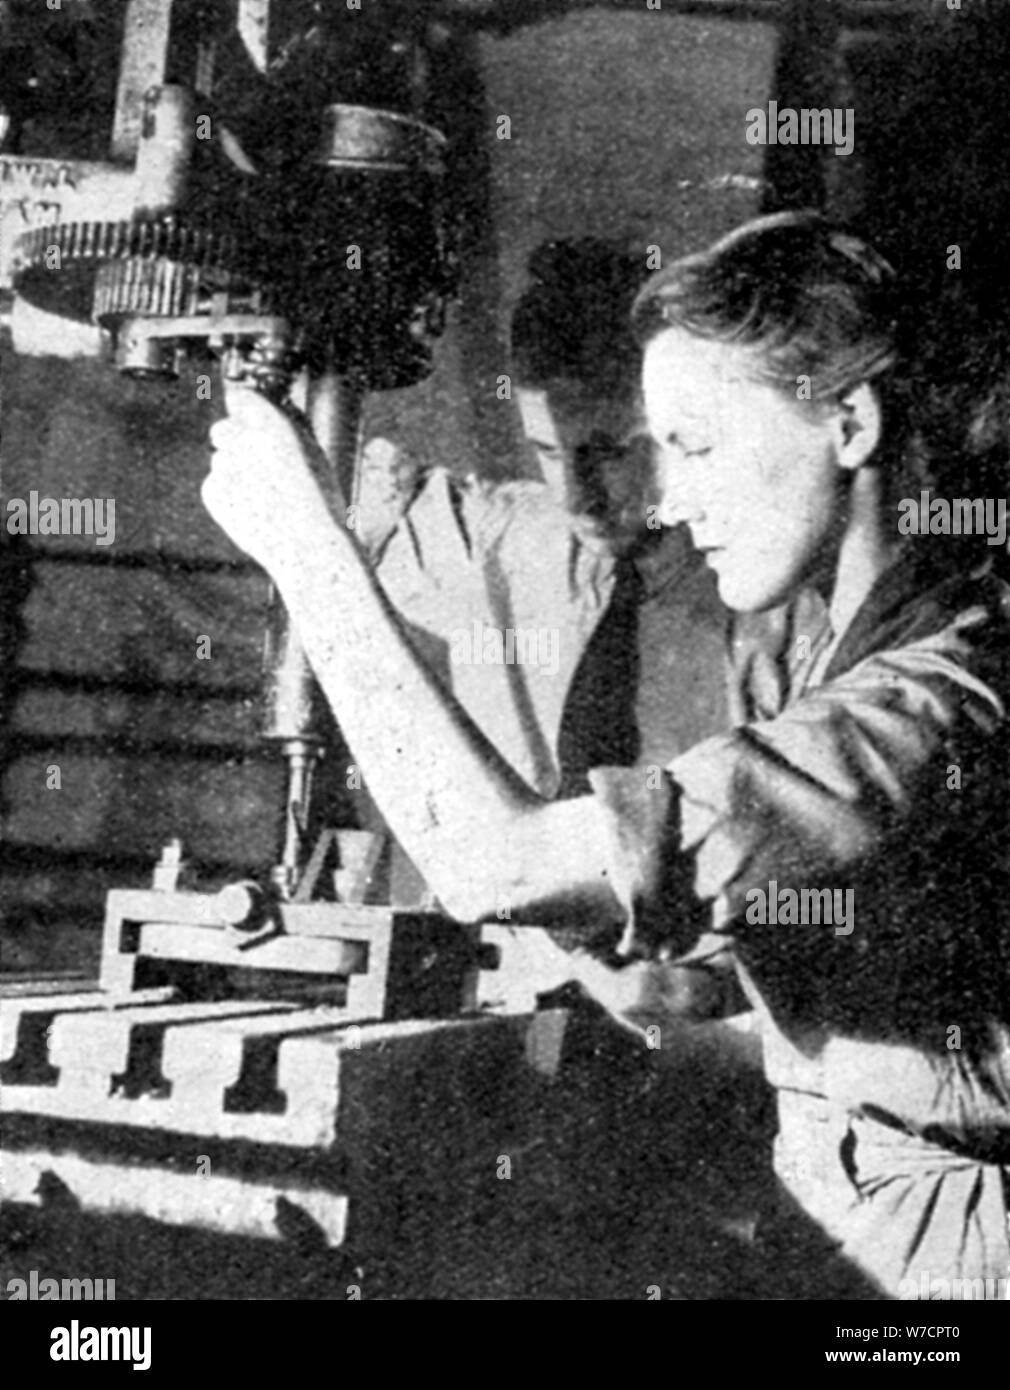 Femme travailleur de l'armement, la seconde guerre mondiale, 1940. Artiste : Inconnu Banque D'Images